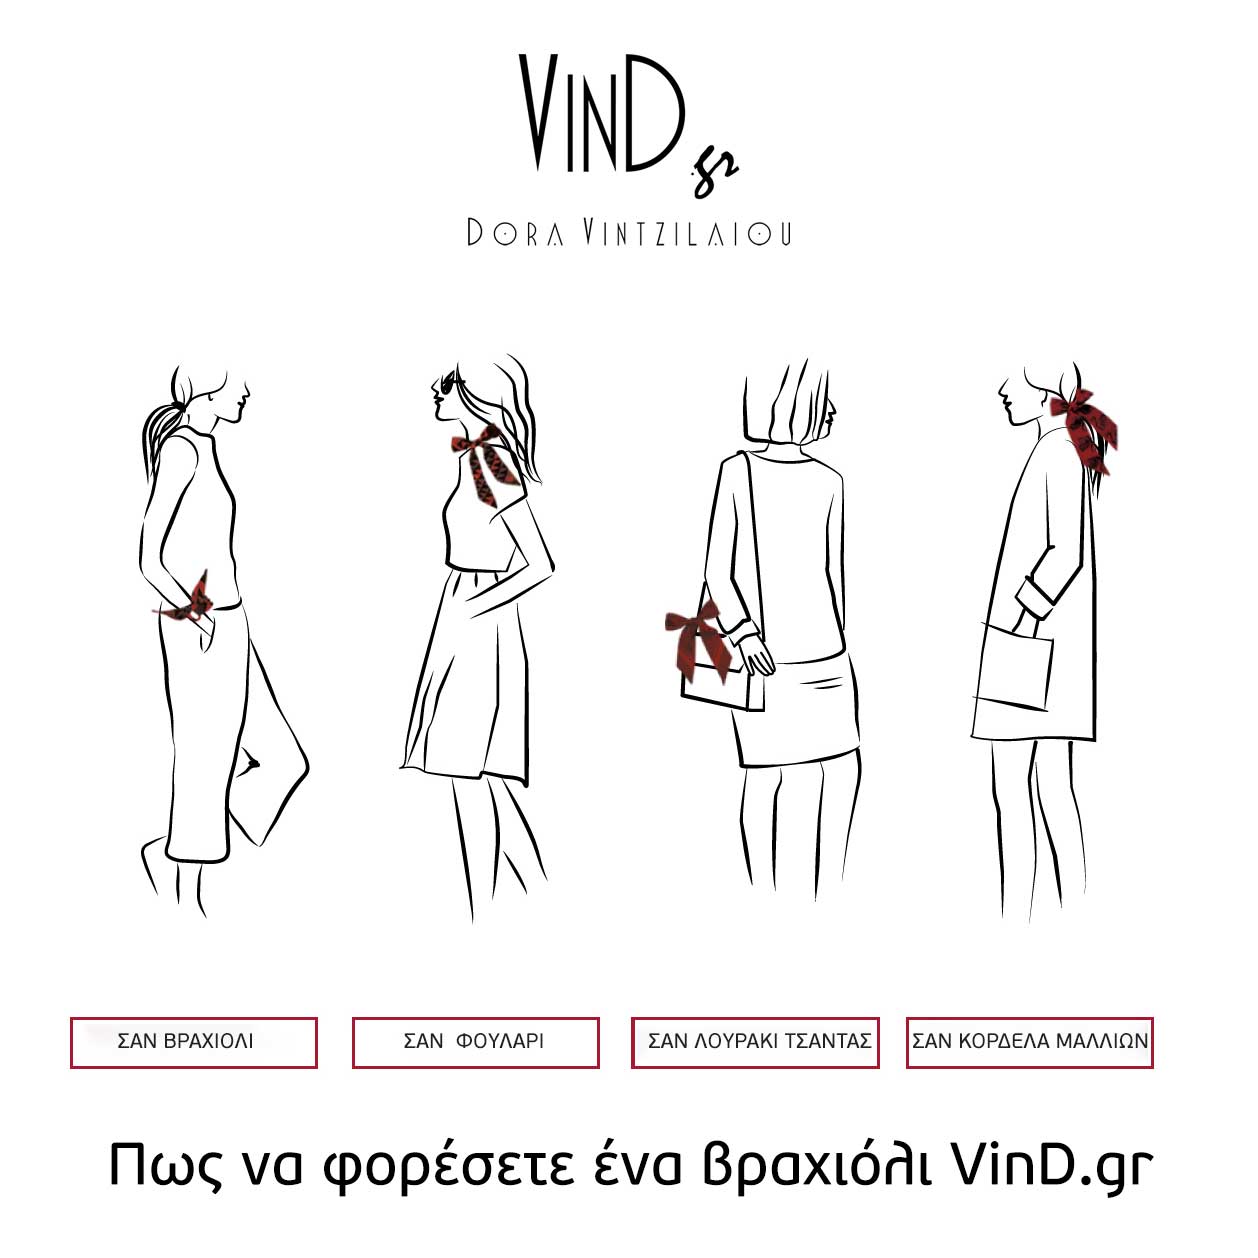 Πως να φορέσετε ένα βραχιόλι VinD.gr